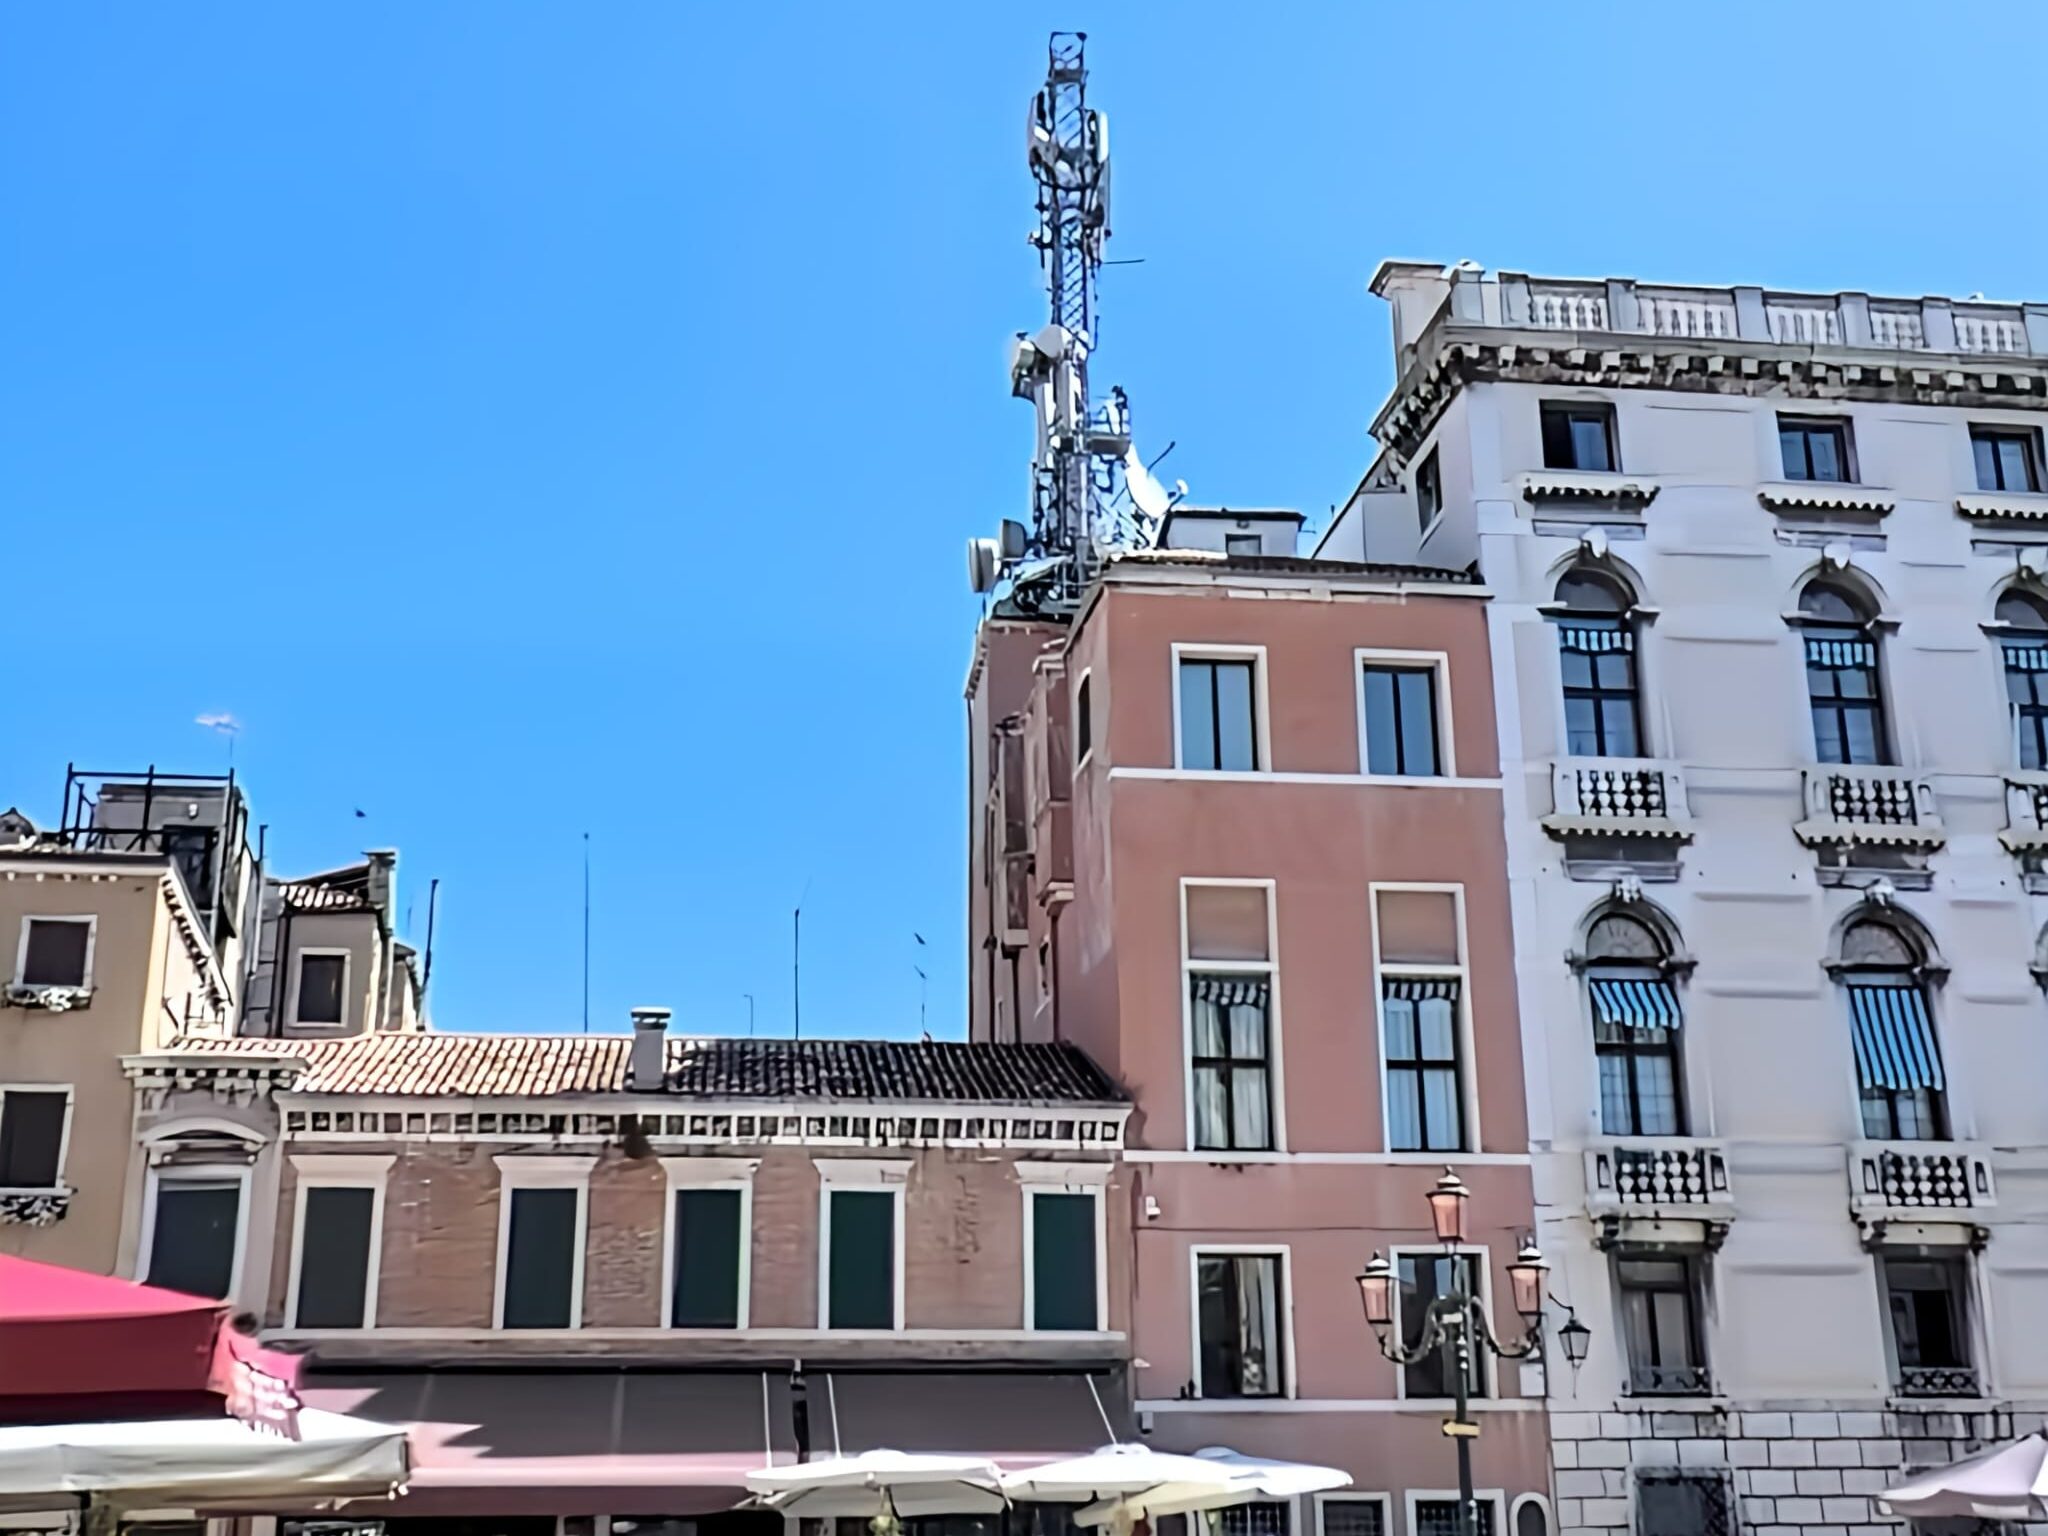 Venezia – cinquanta nuove installazioni 5G